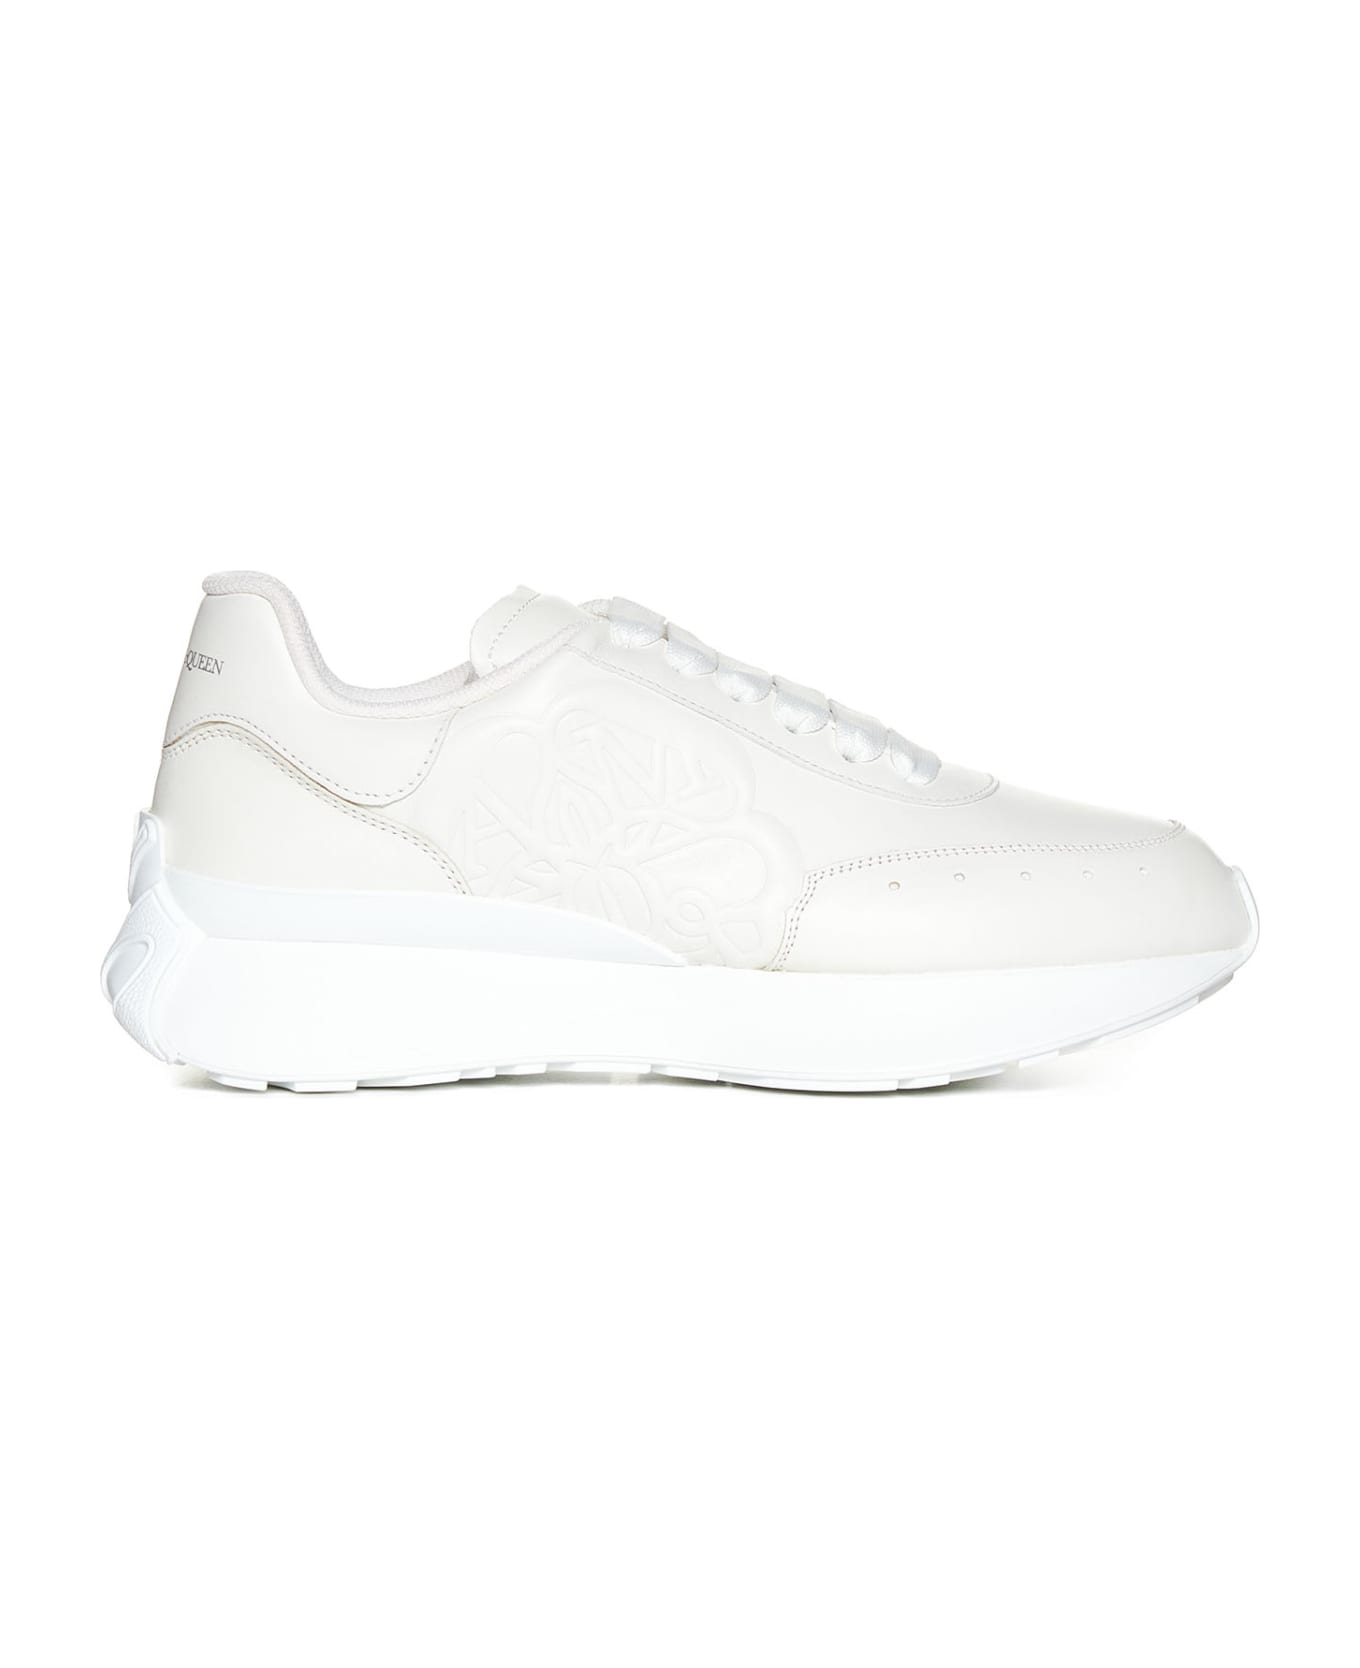 Alexander McQueen Sprint Runner Sneakers - White/white